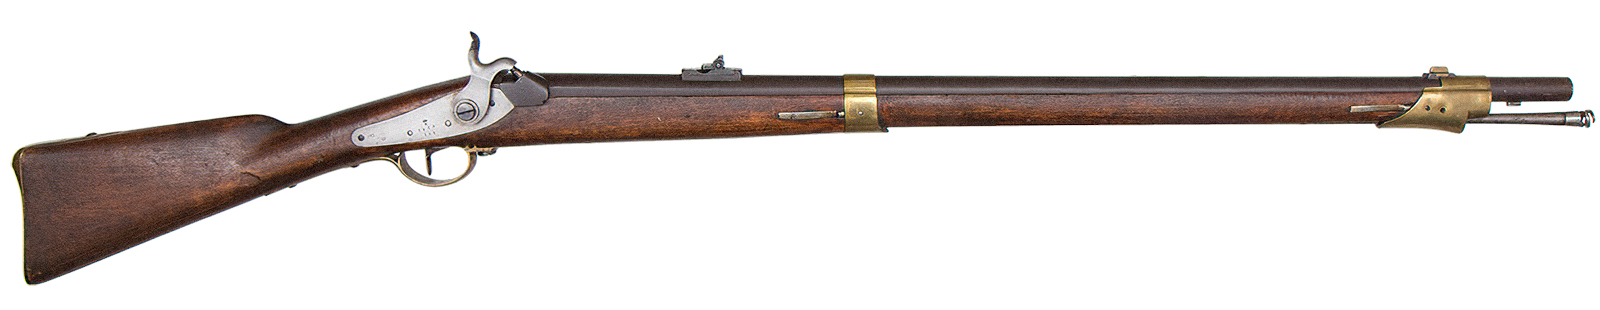 16-lødige marinemuskett Modell 1843 forandret til tappgevær etter 1858.